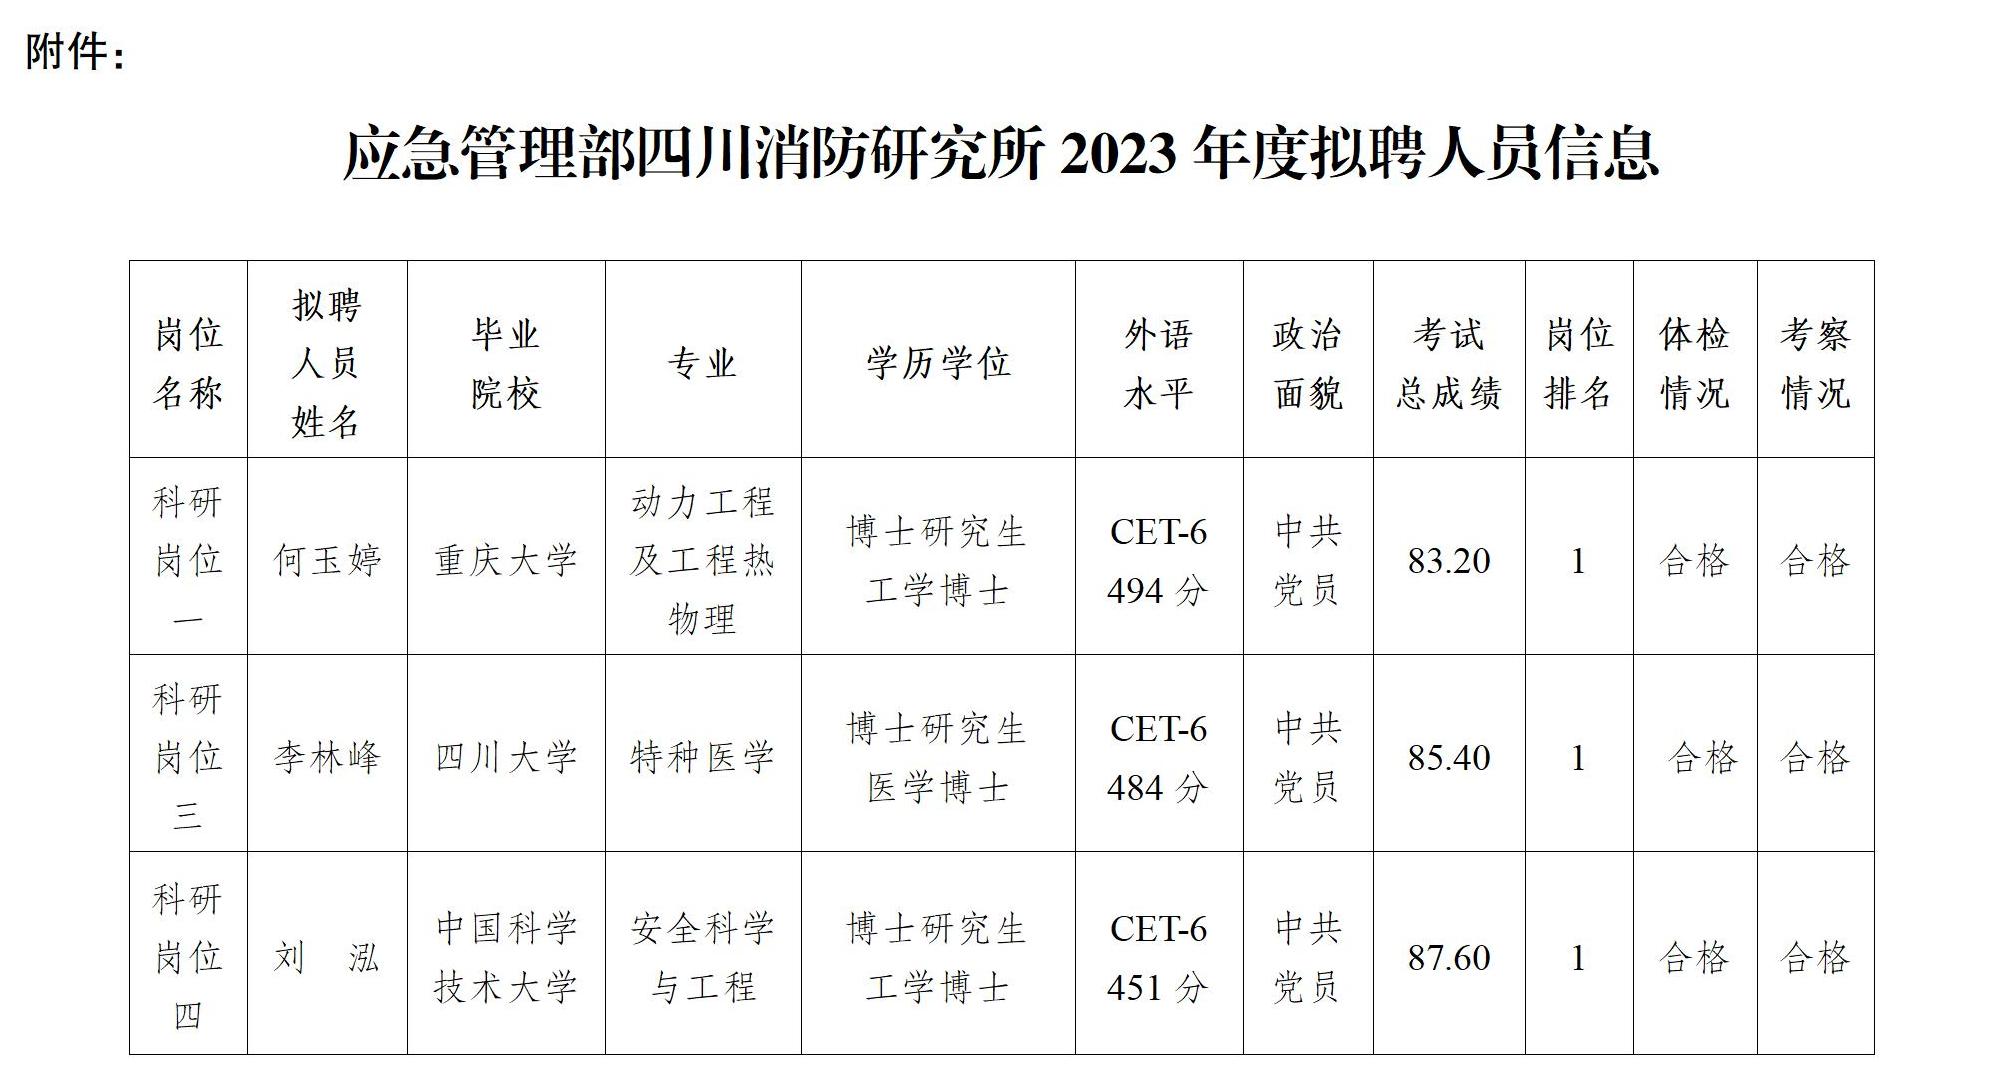 应急管理部四川消防研究所关于2023年度拟聘用人员的公示_02.jpg